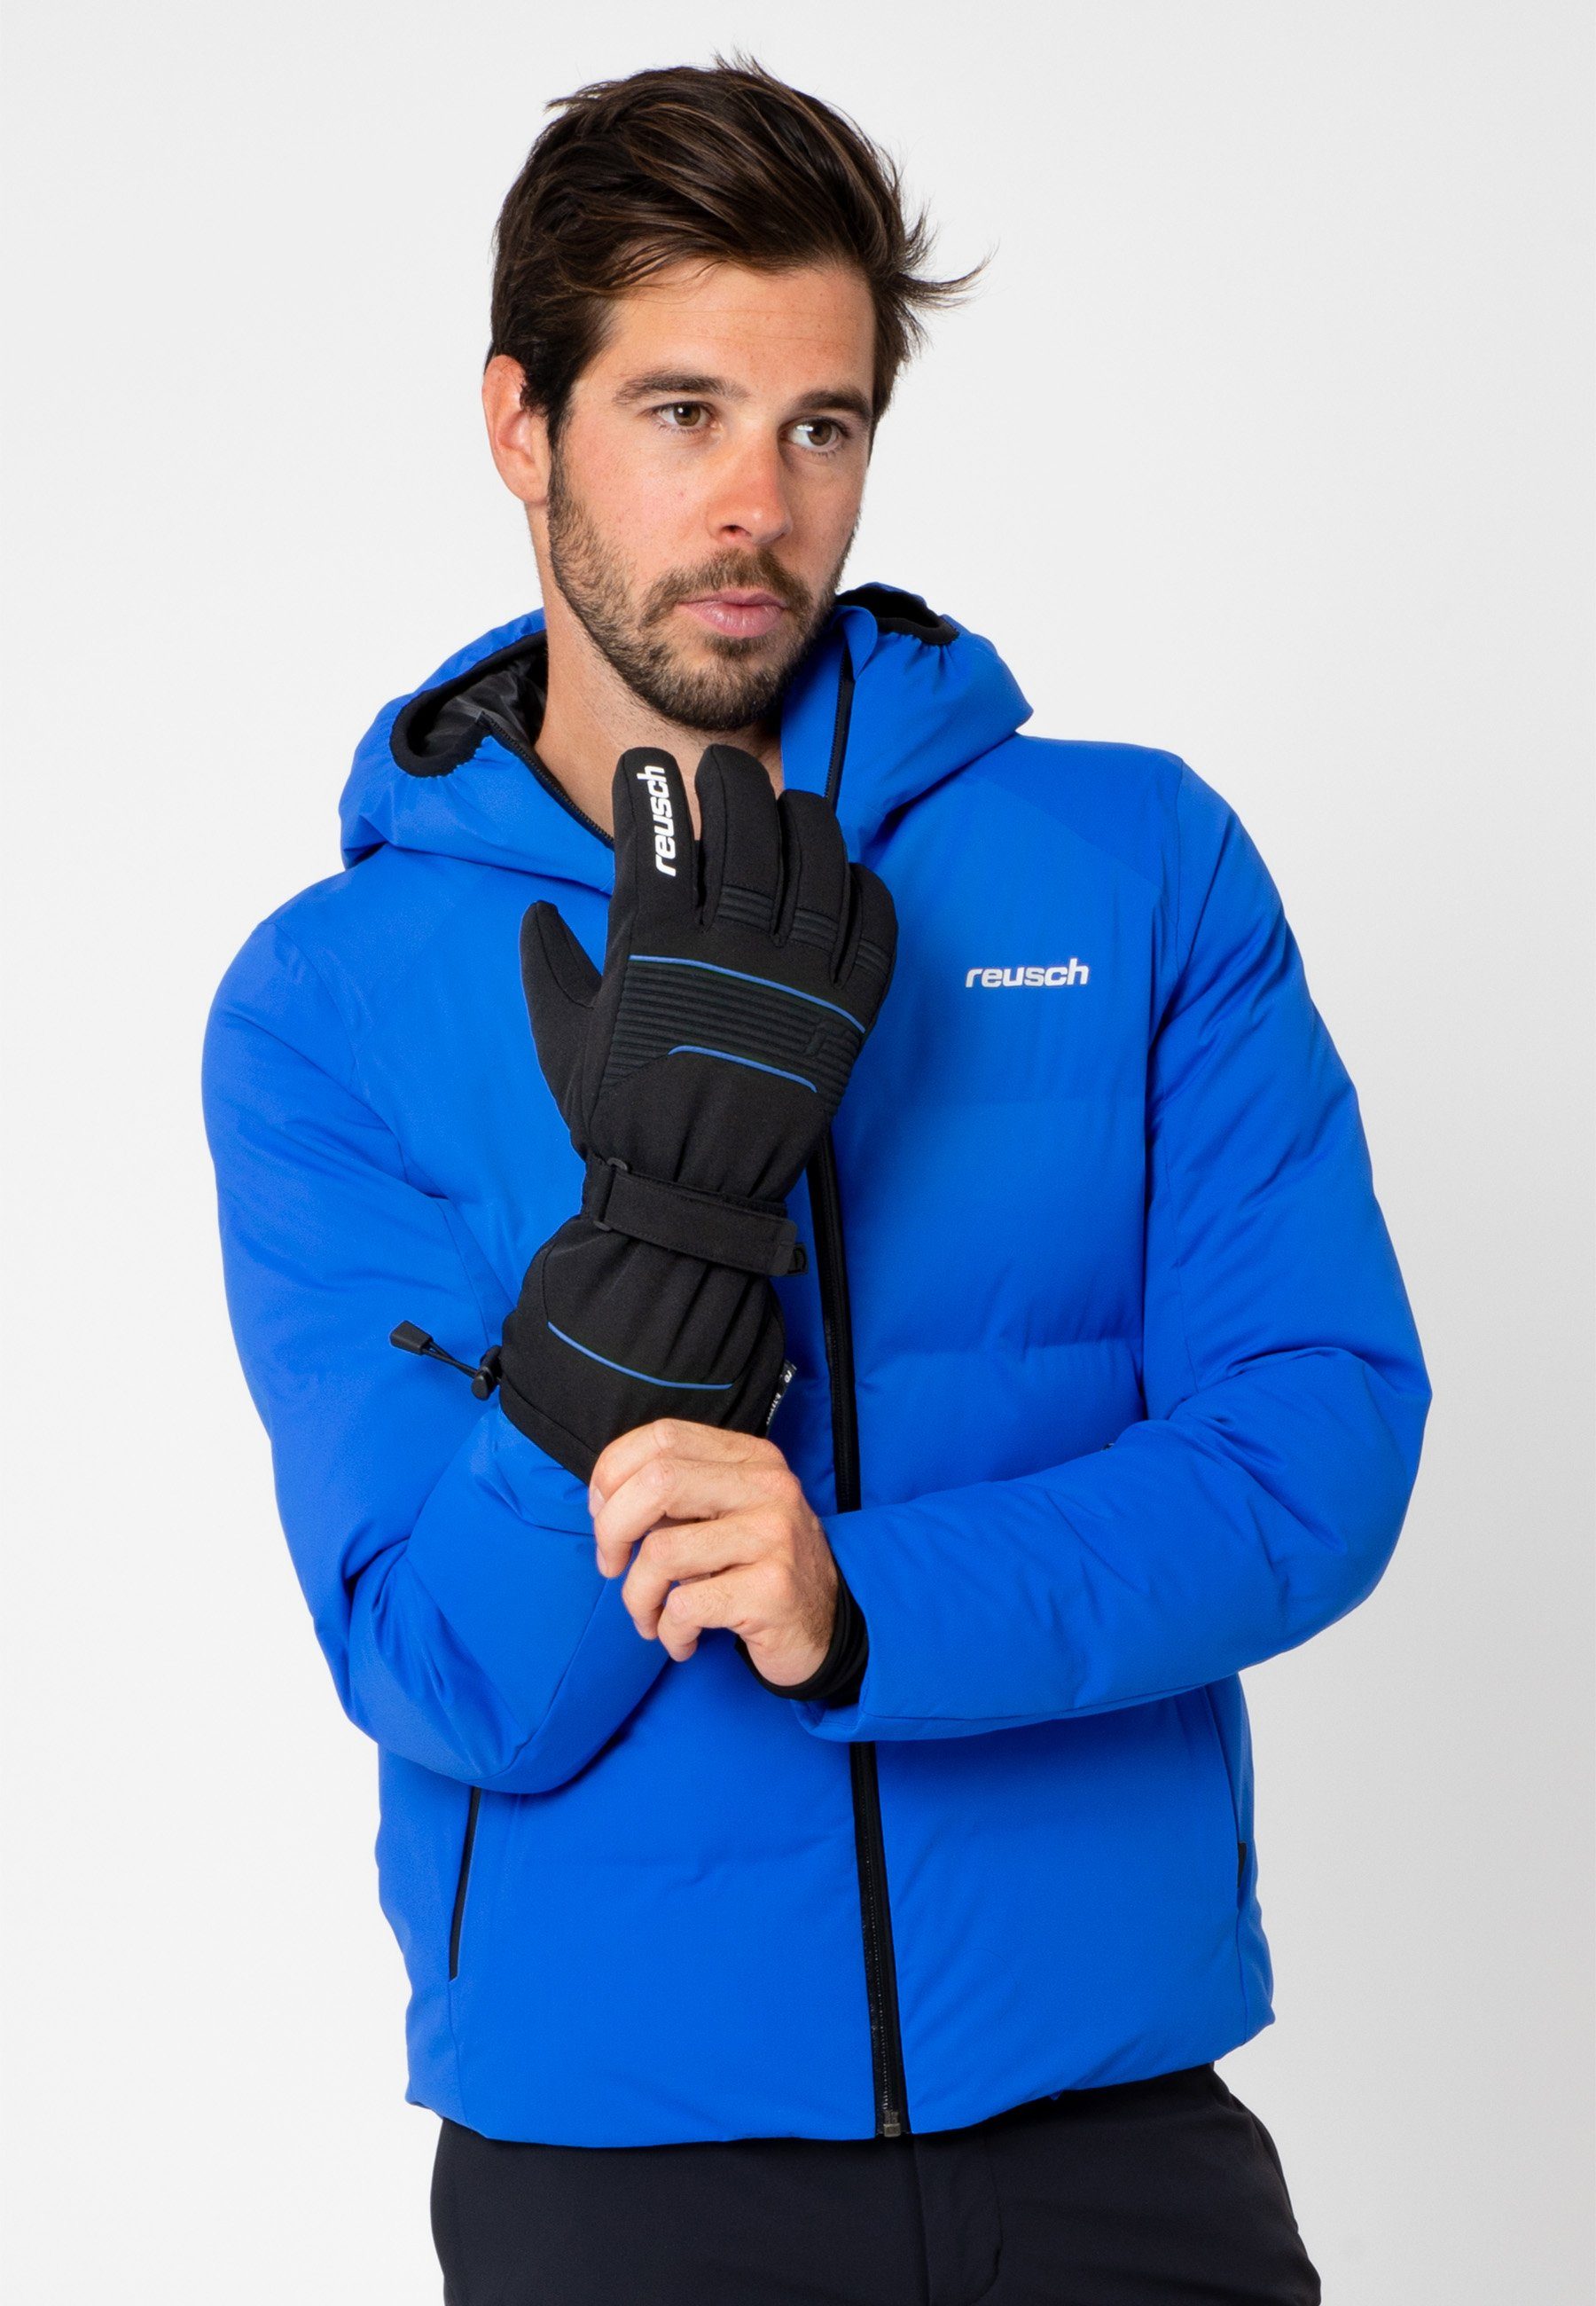 Skihandschuhe Crosby Reusch Design XT in blau-schwarz sportlichem R-TEX®